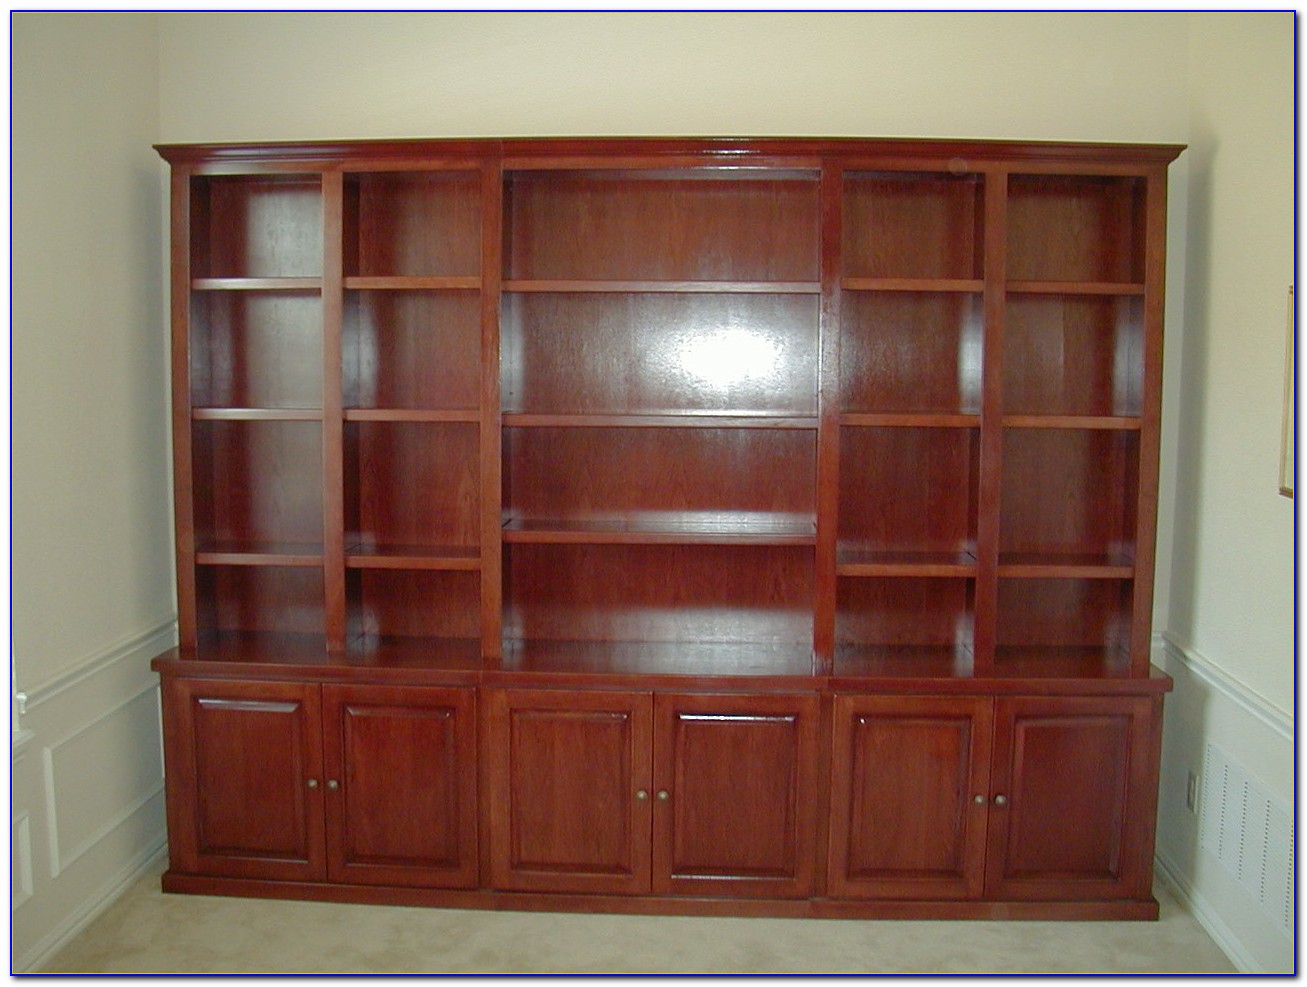 How To Build A Bookcase Headboard - Bookcase : Home Design Ideas #9WPrexGpQ1114336